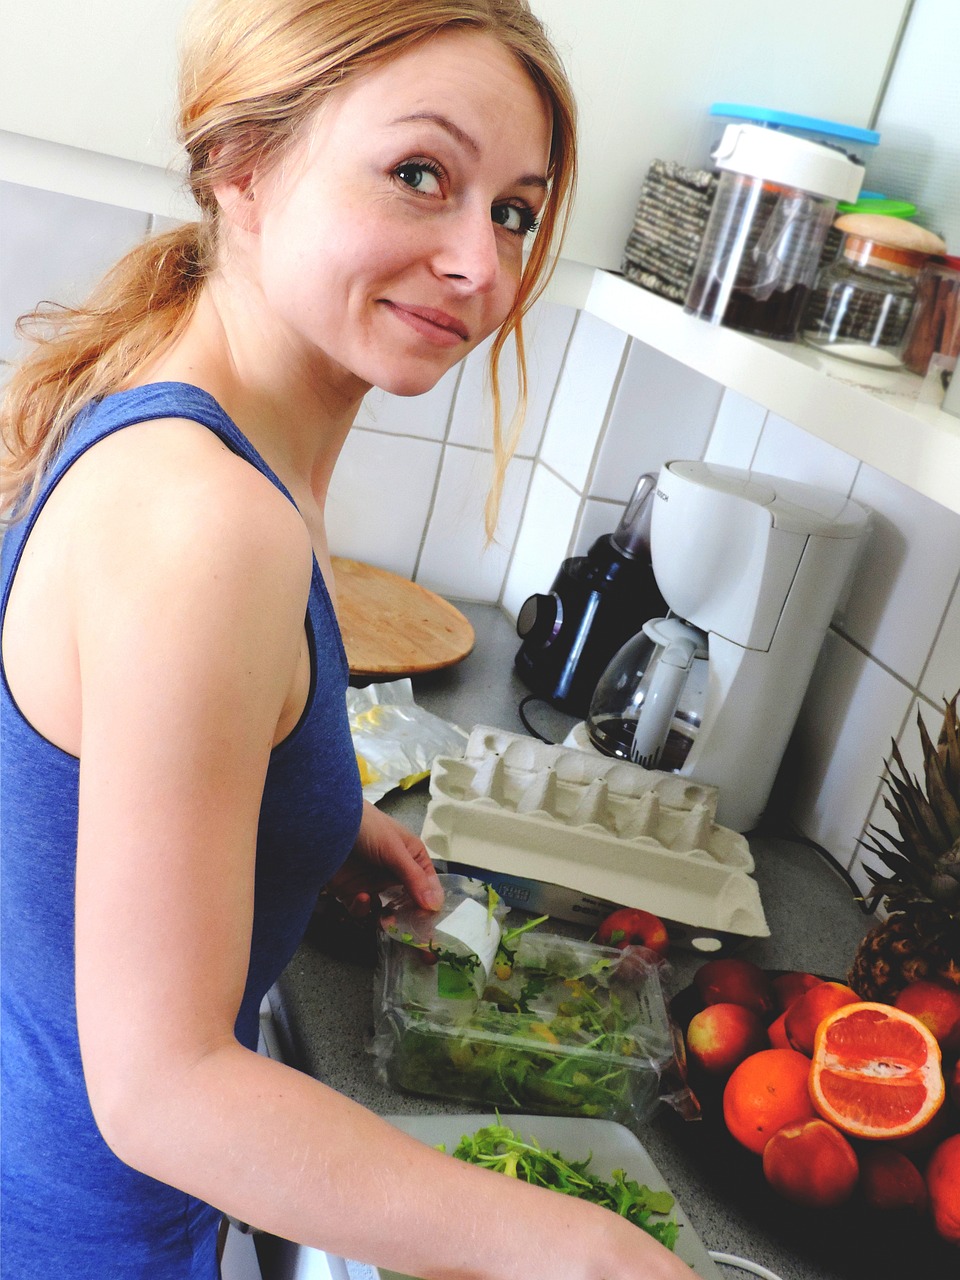 Femme souriant dans la cuisine | Source : Pixabay